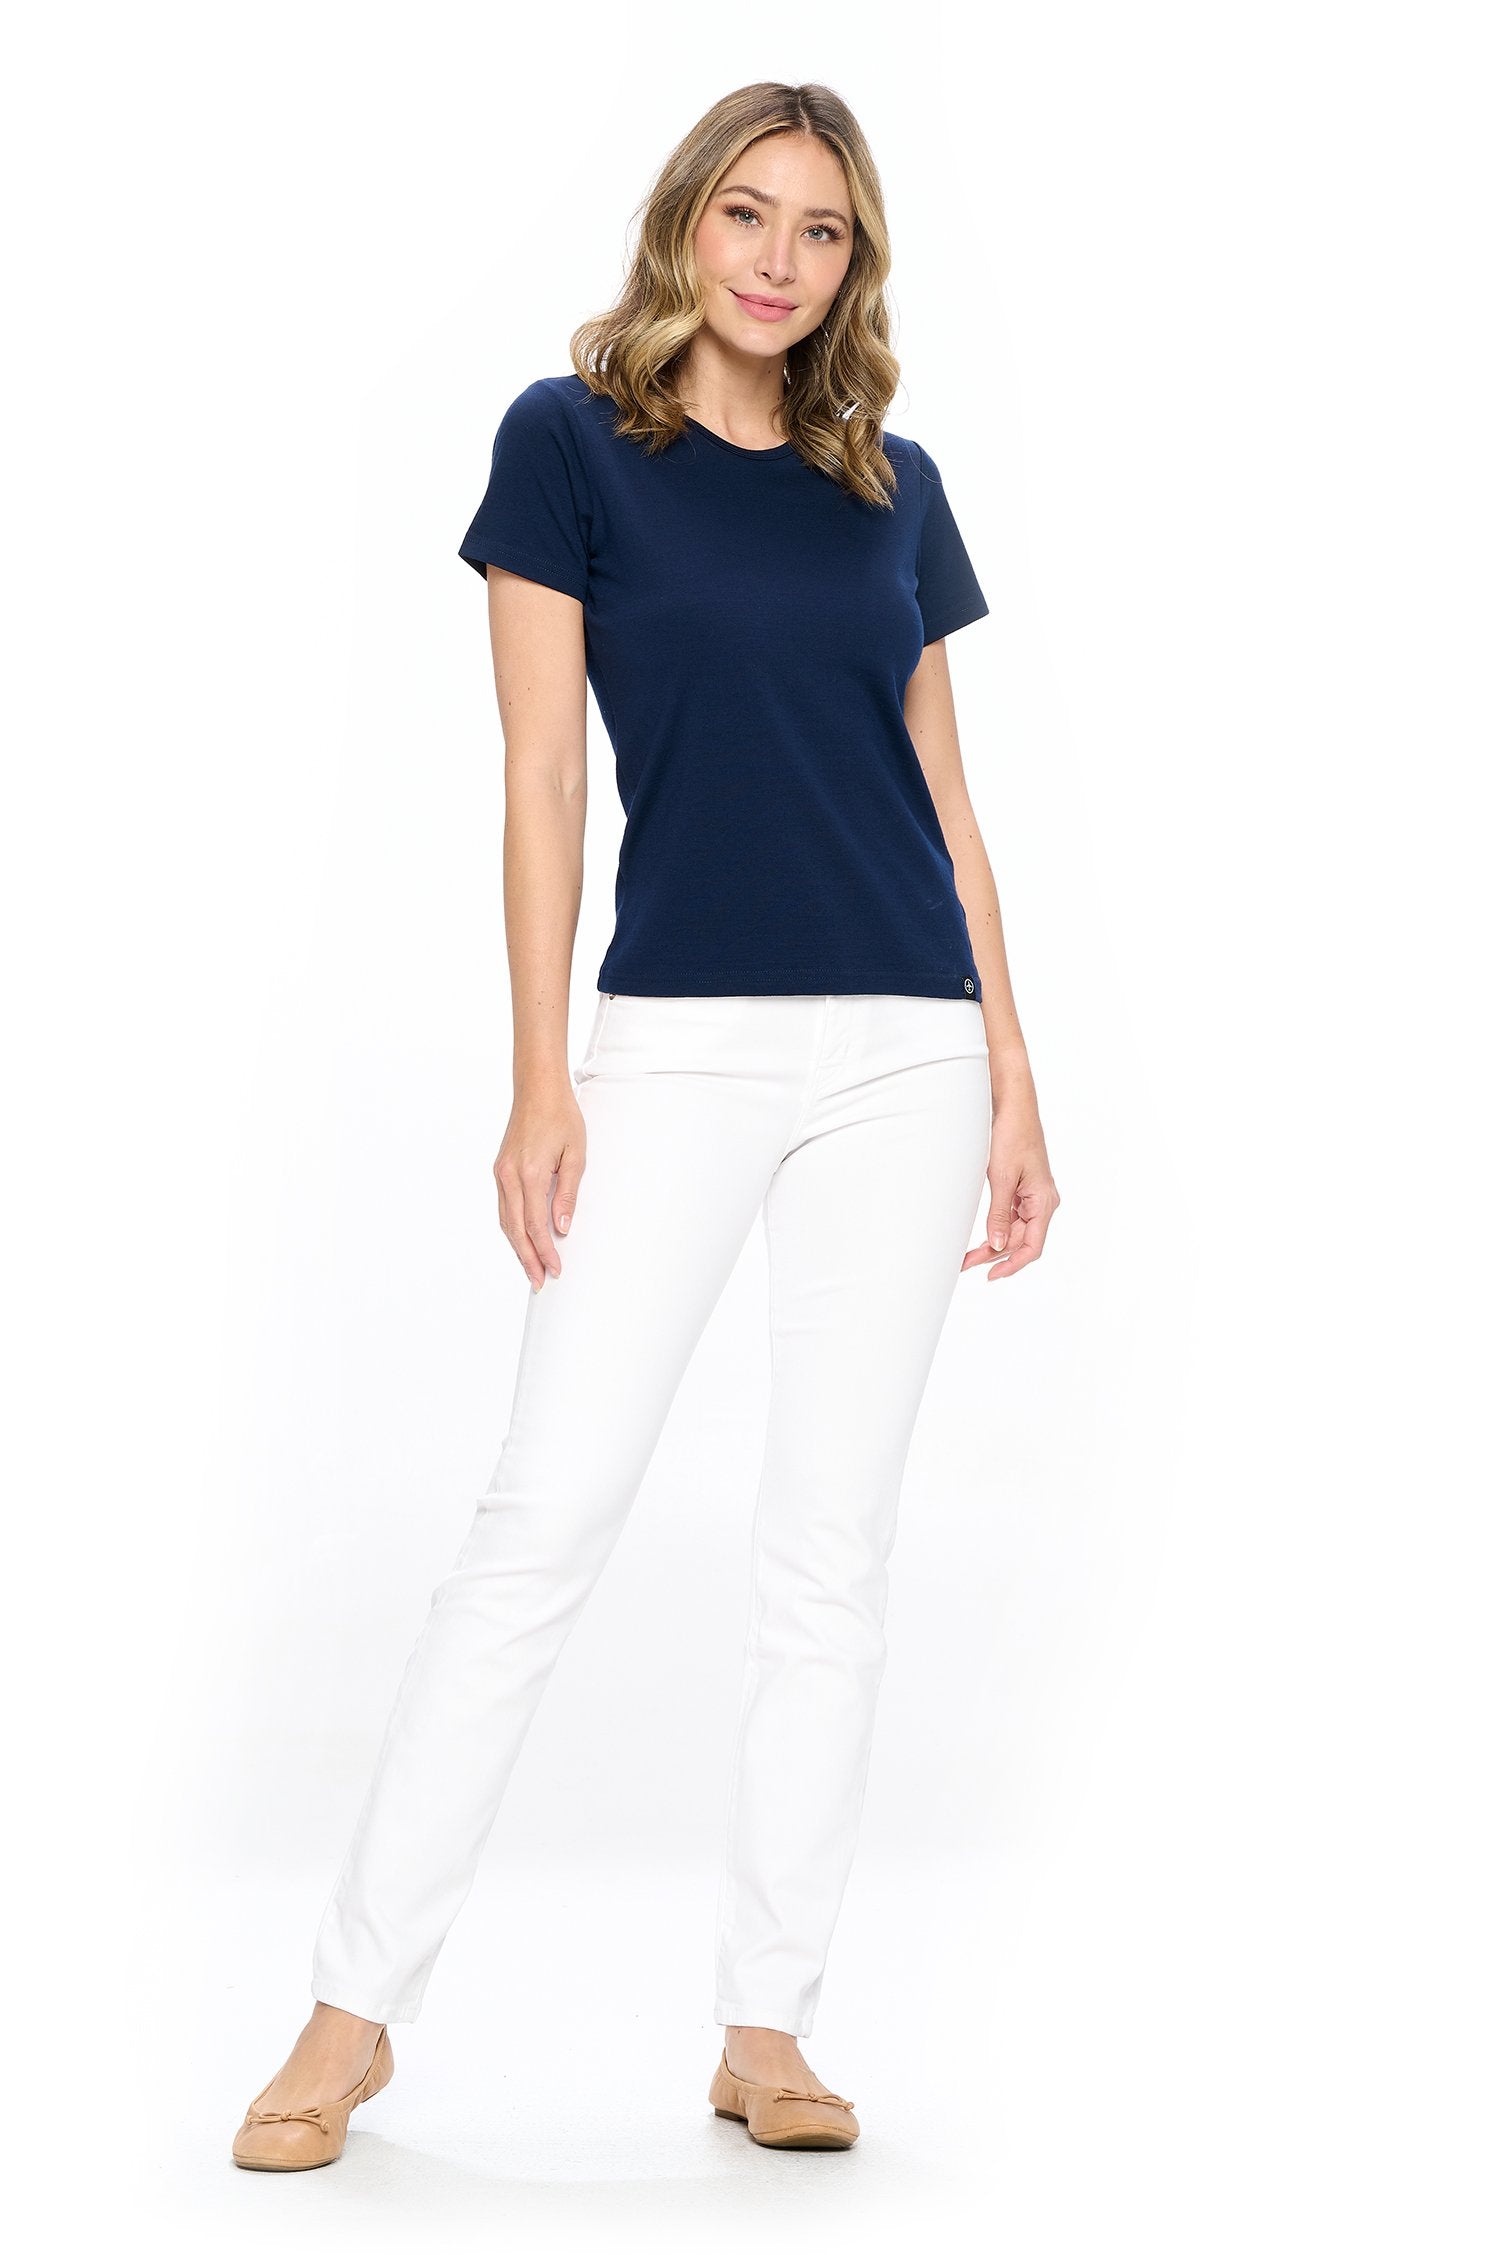 Aviator Skinny travel jeans for women in white